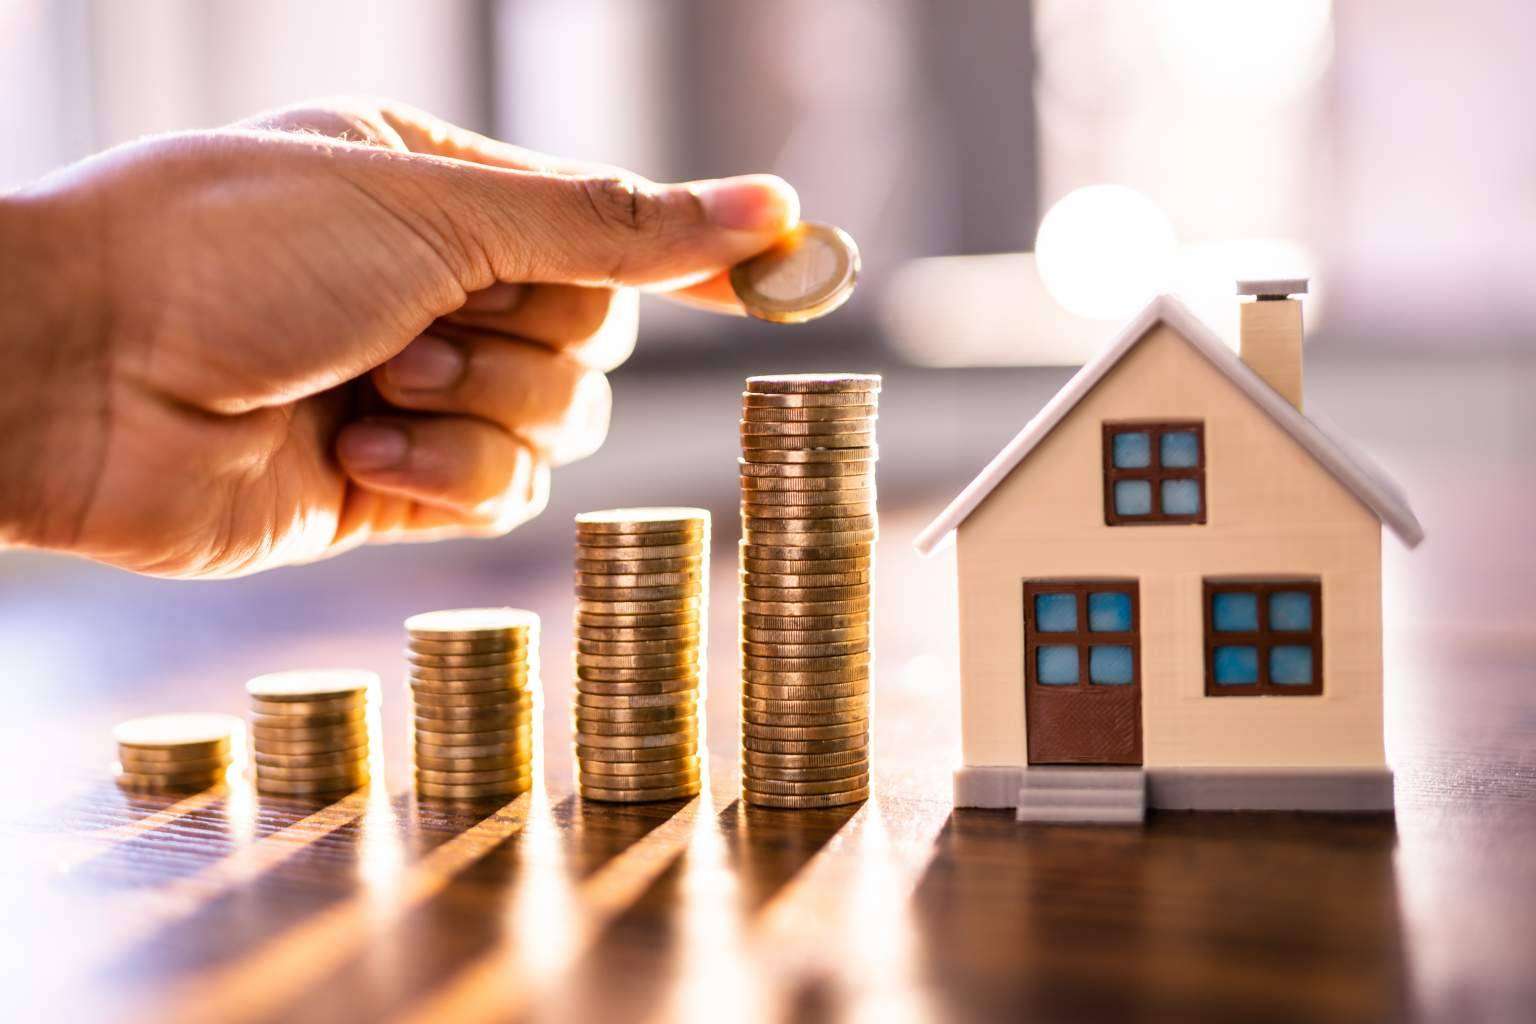 Inversión inmobiliaria con KTAR Homes, gran oportunidad de rentabilidad con una cartera interna de propiedades exclusivas